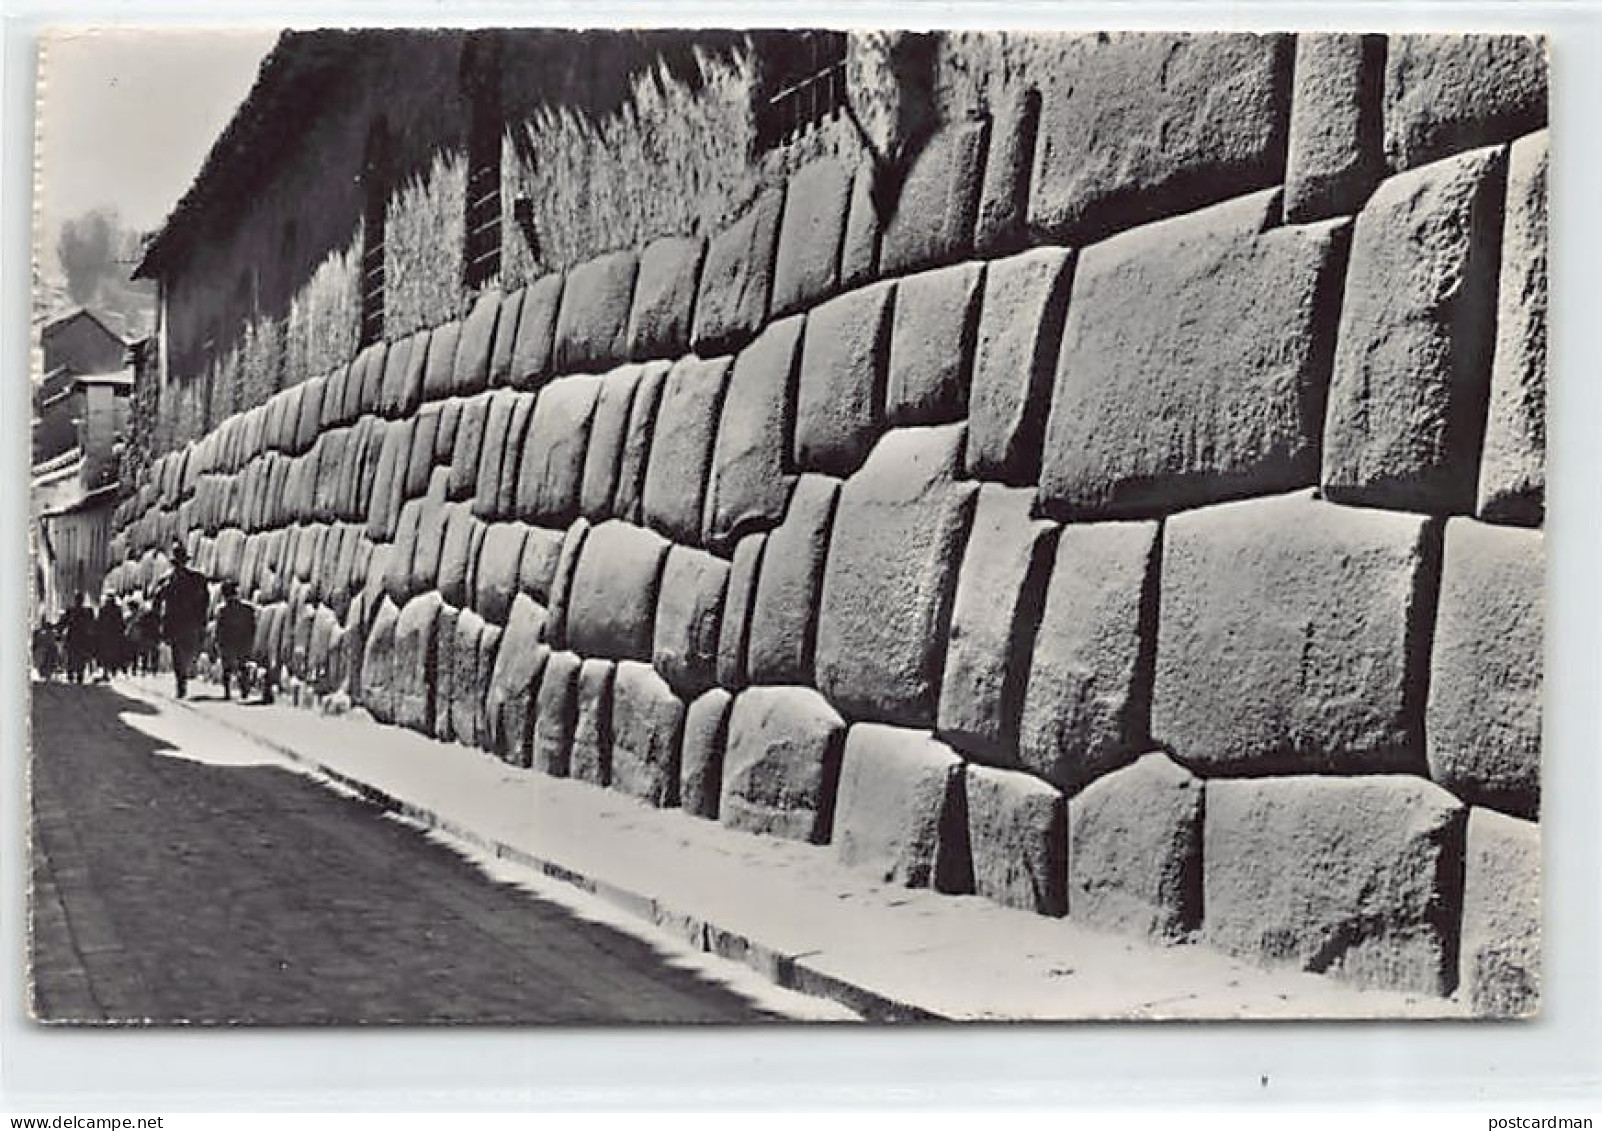 Peru - CUZCO - Calle Con Muro Incaico - Ed. Swiss Foto 60235 - Perú